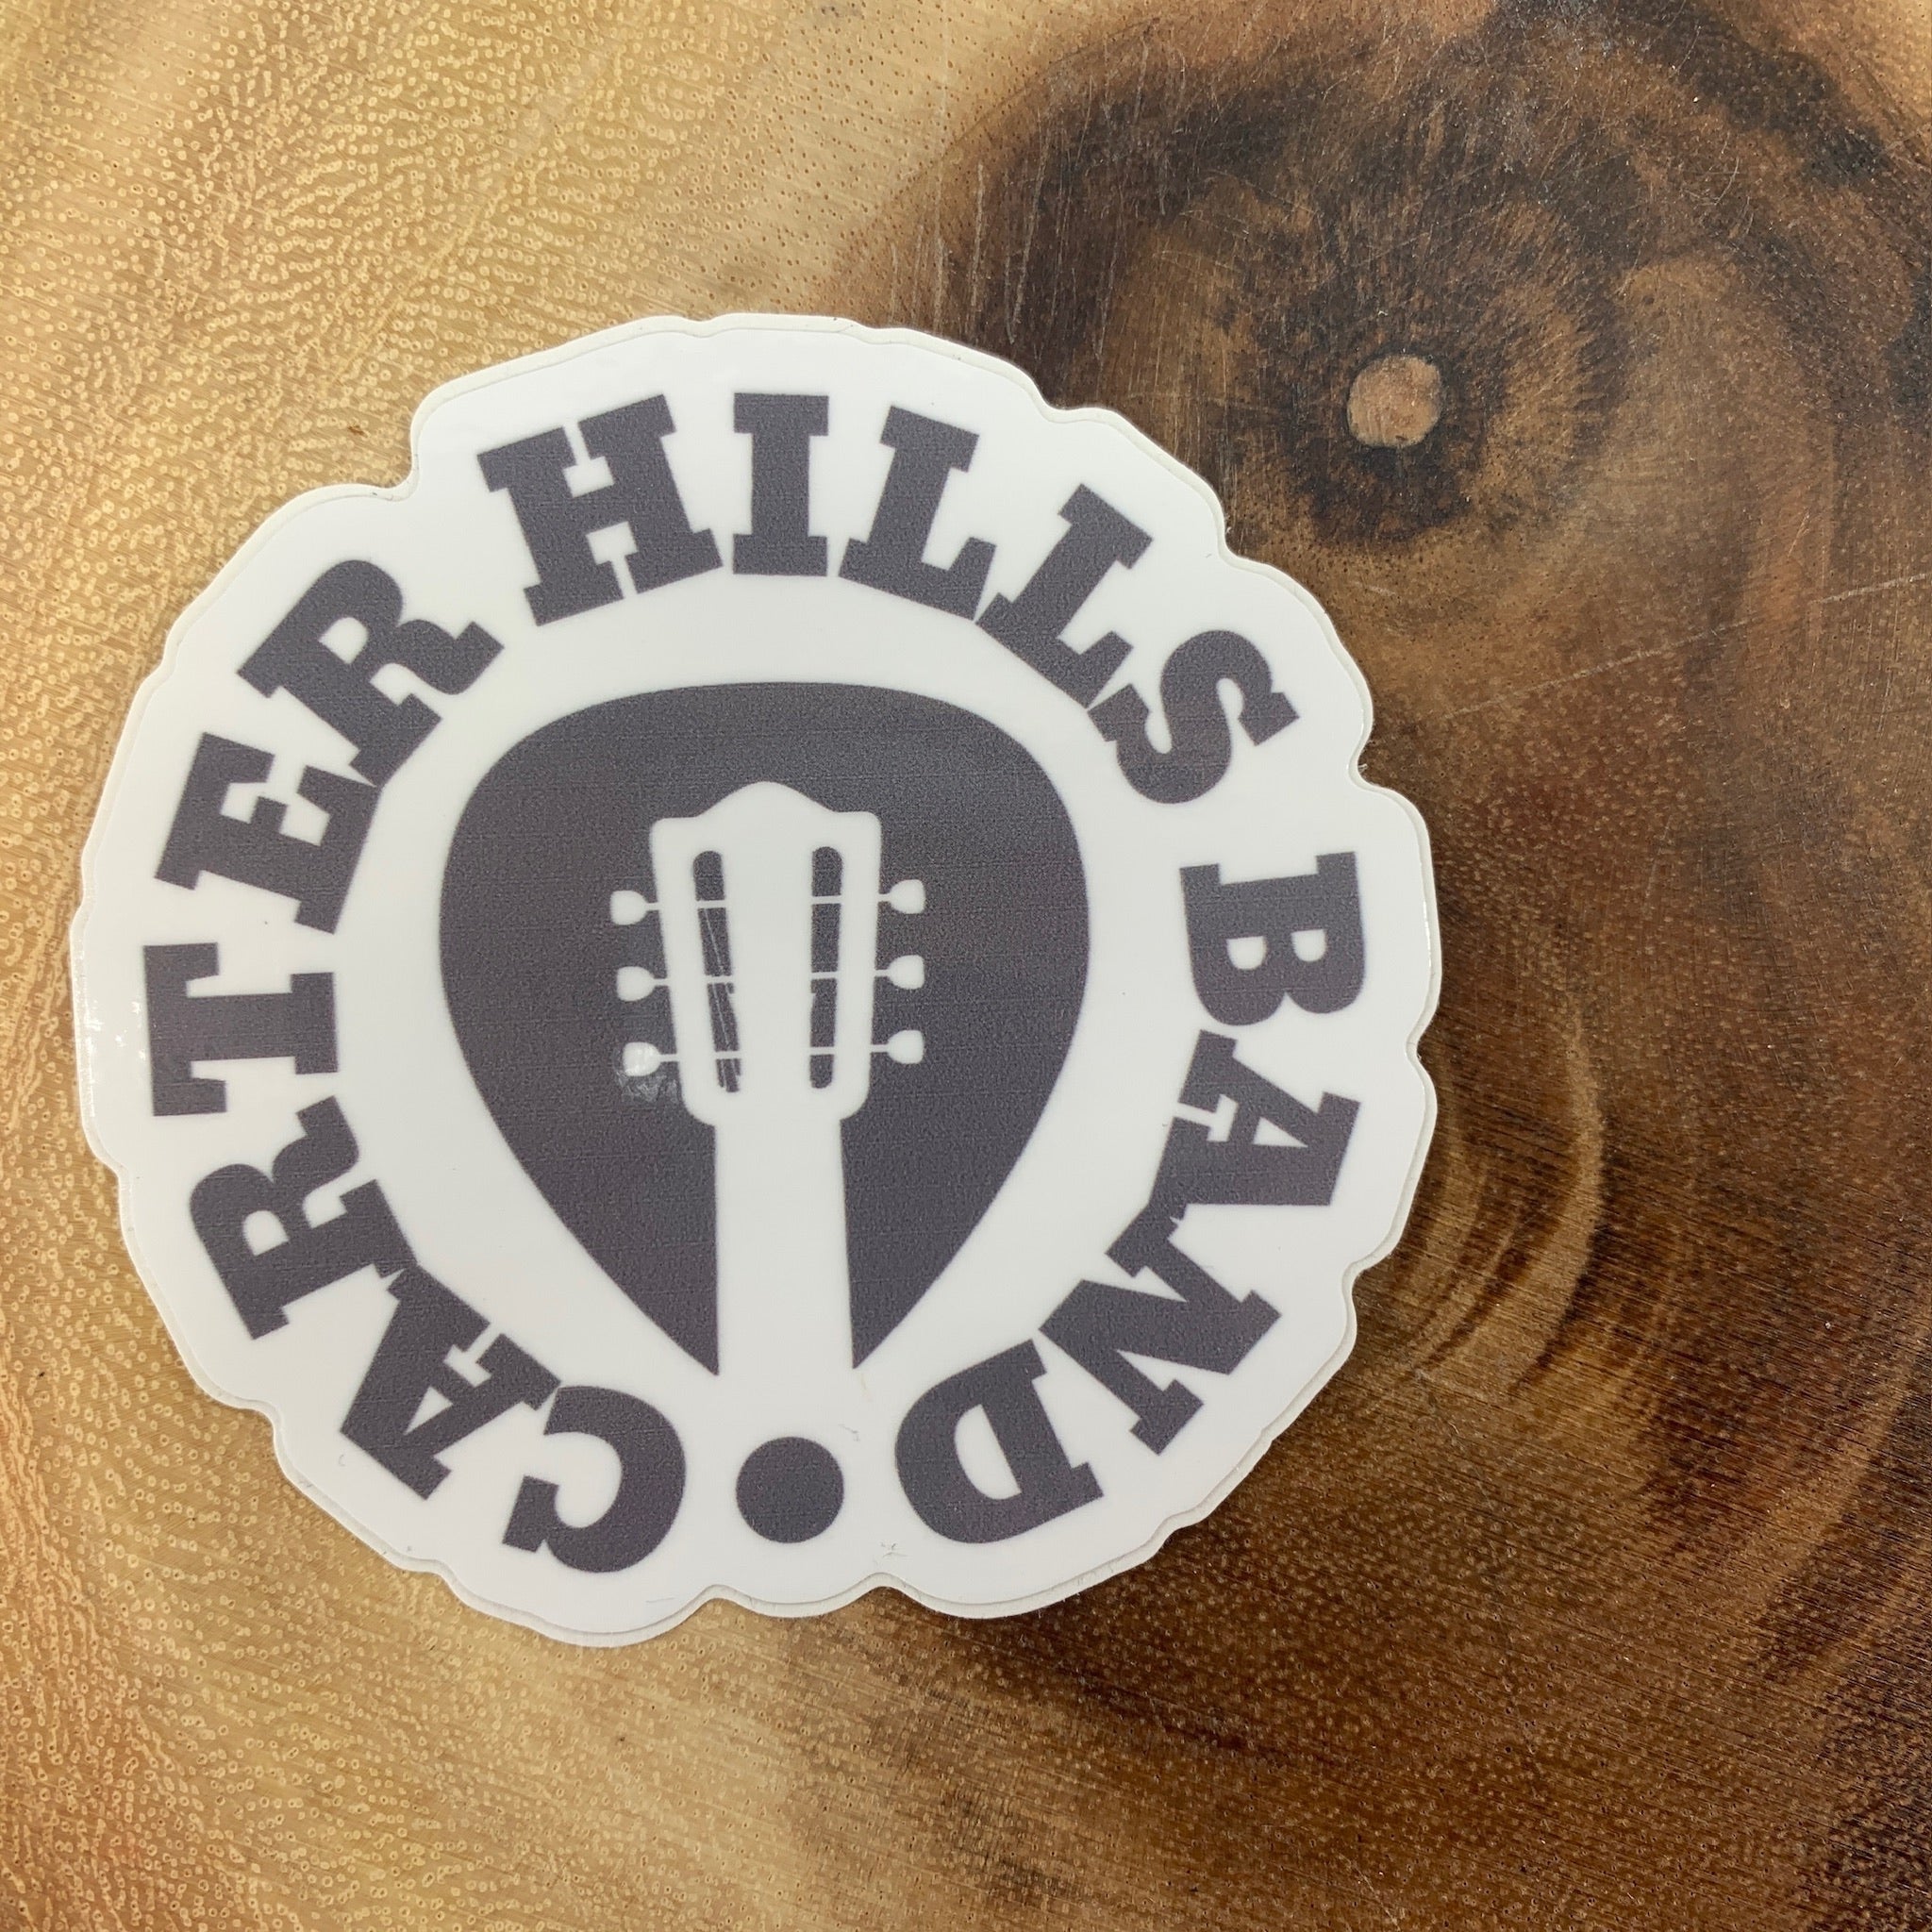 Carter Hills Band Sticker